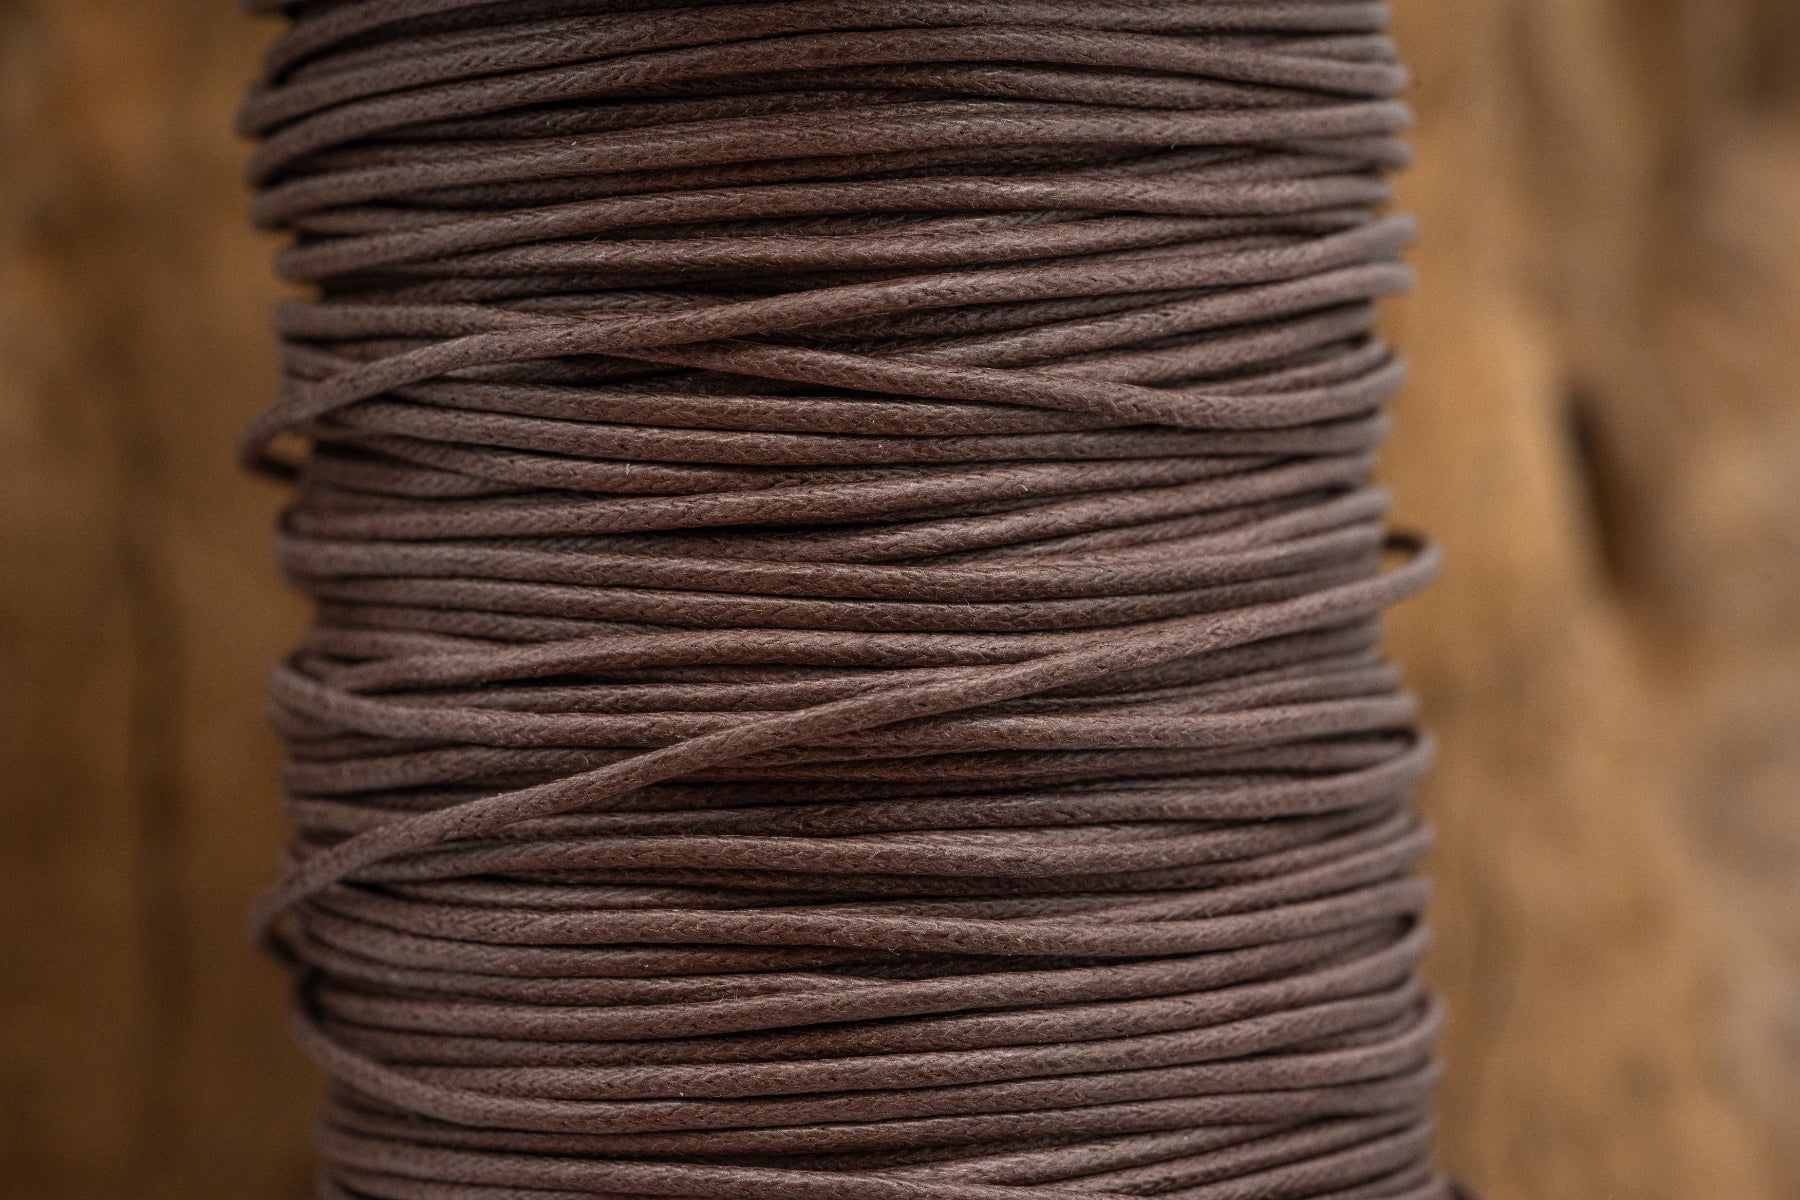 Baumwollband Braun der Kategorie Ketten und Bänder